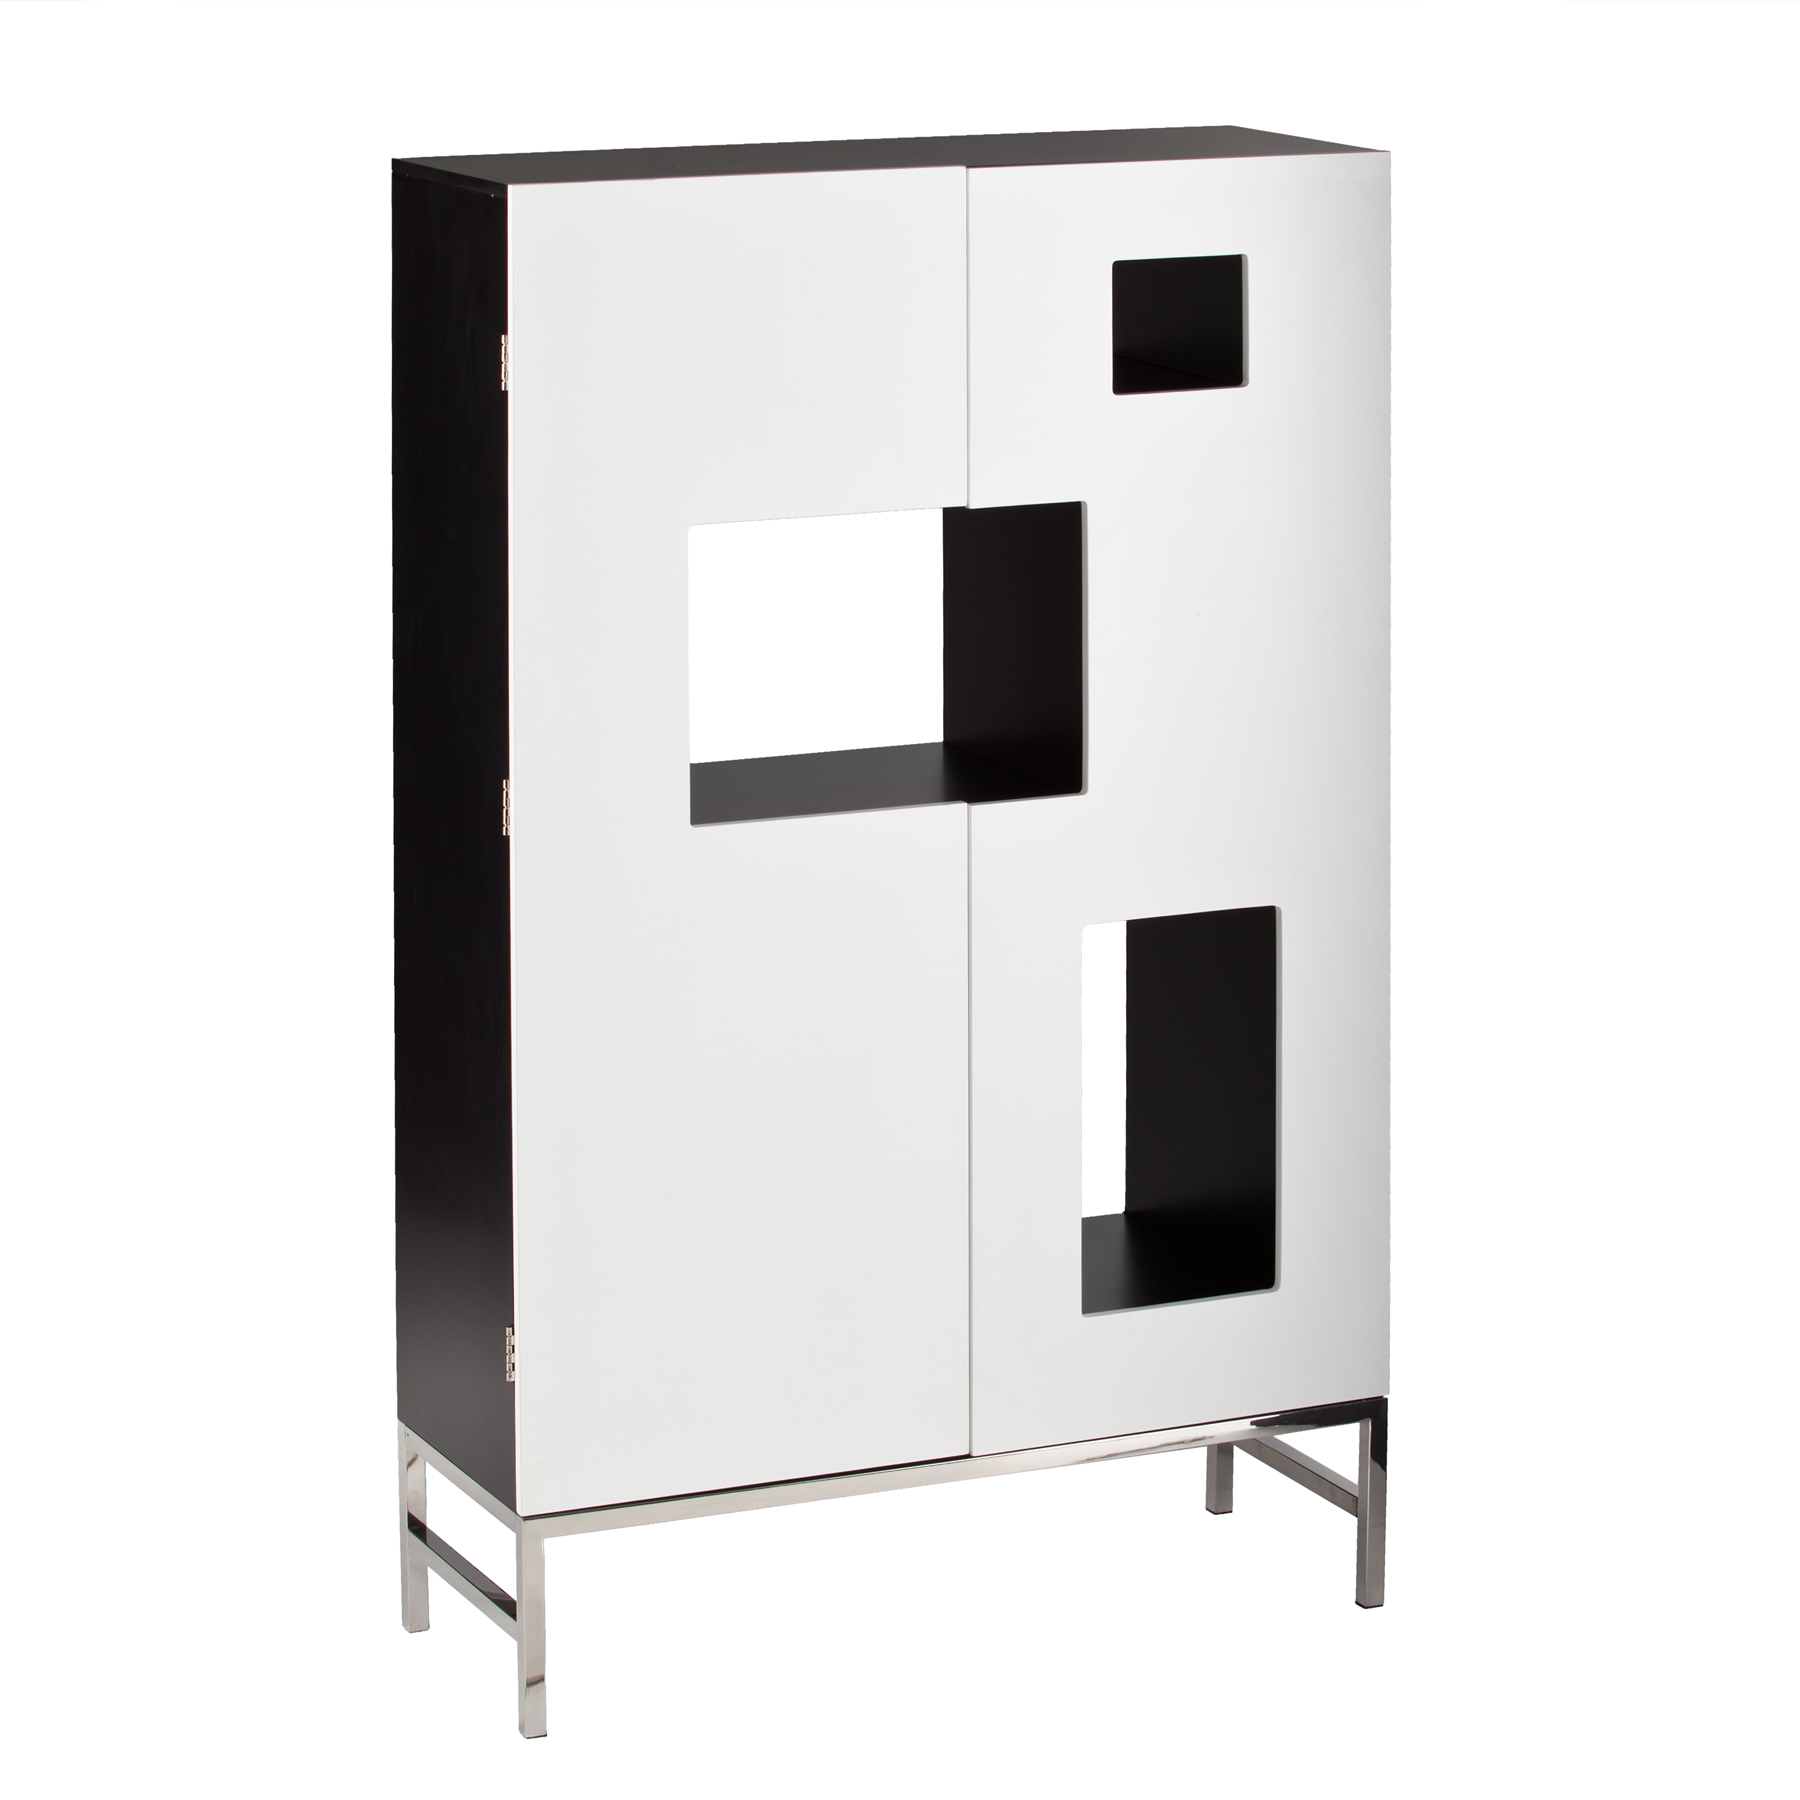 Furnituremaxx Rowena White Stainless Steel Shadowbox Wine/Bar Cabinet          